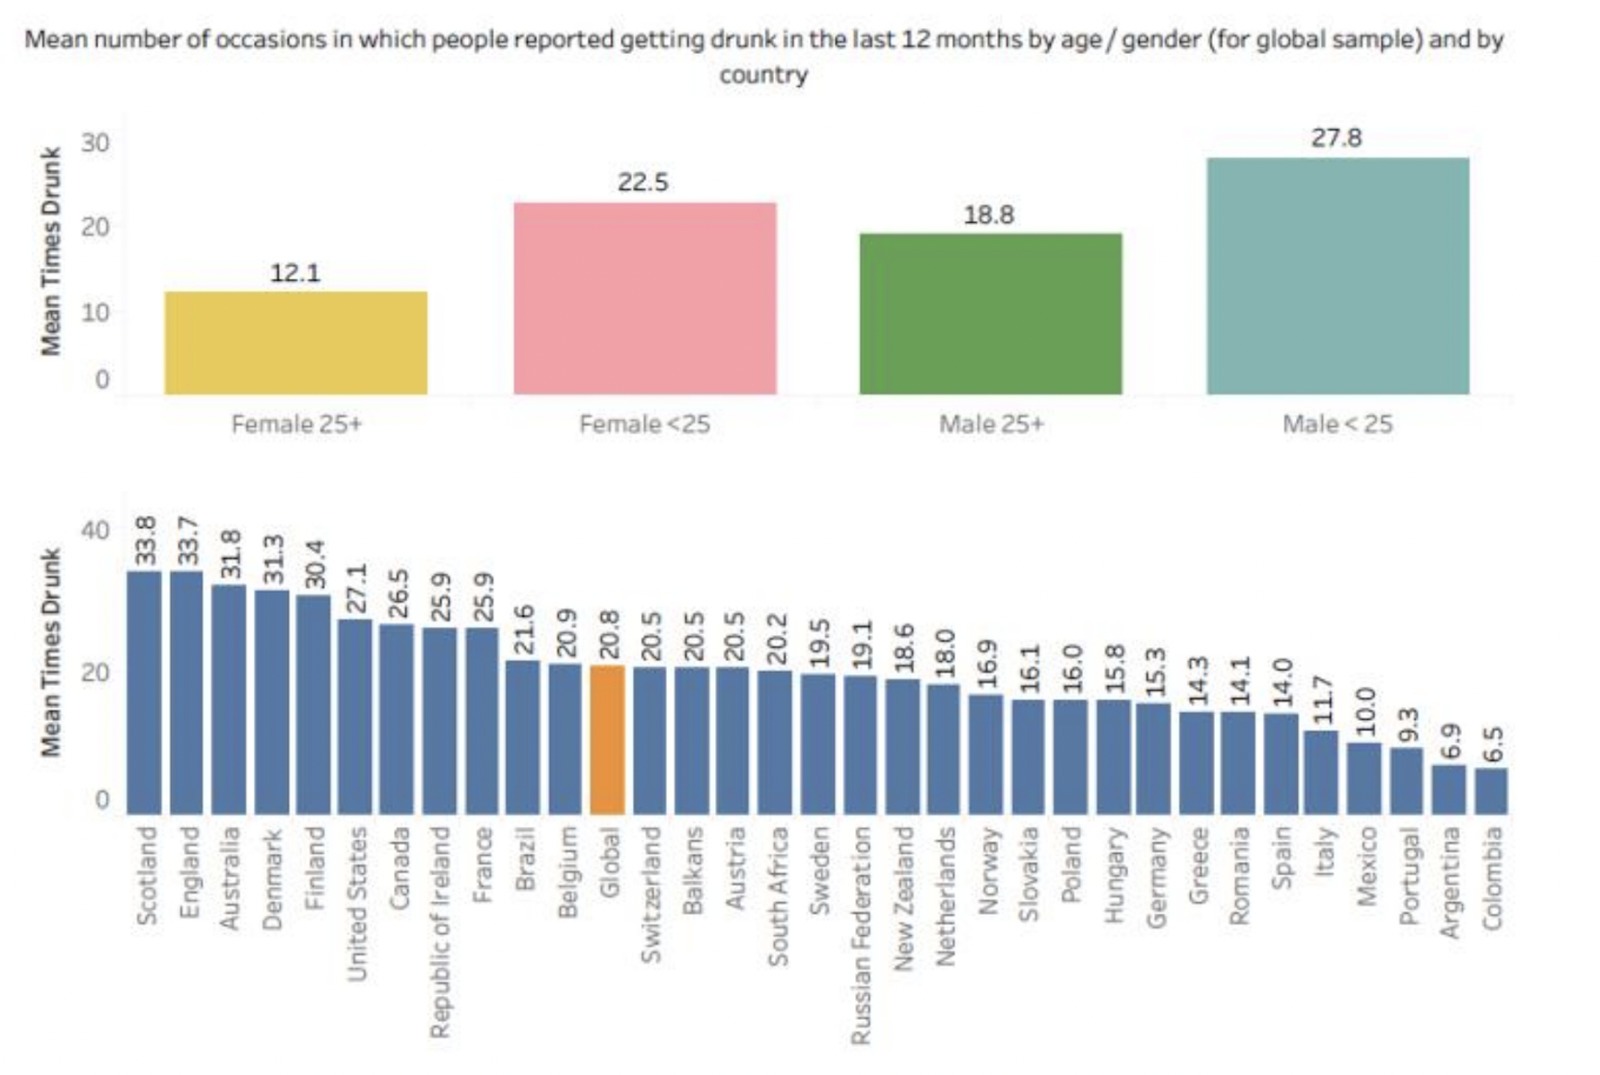  Tudja, mely országokban fogyasztják a legtöbb alkoholt? Ismerje meg őket!